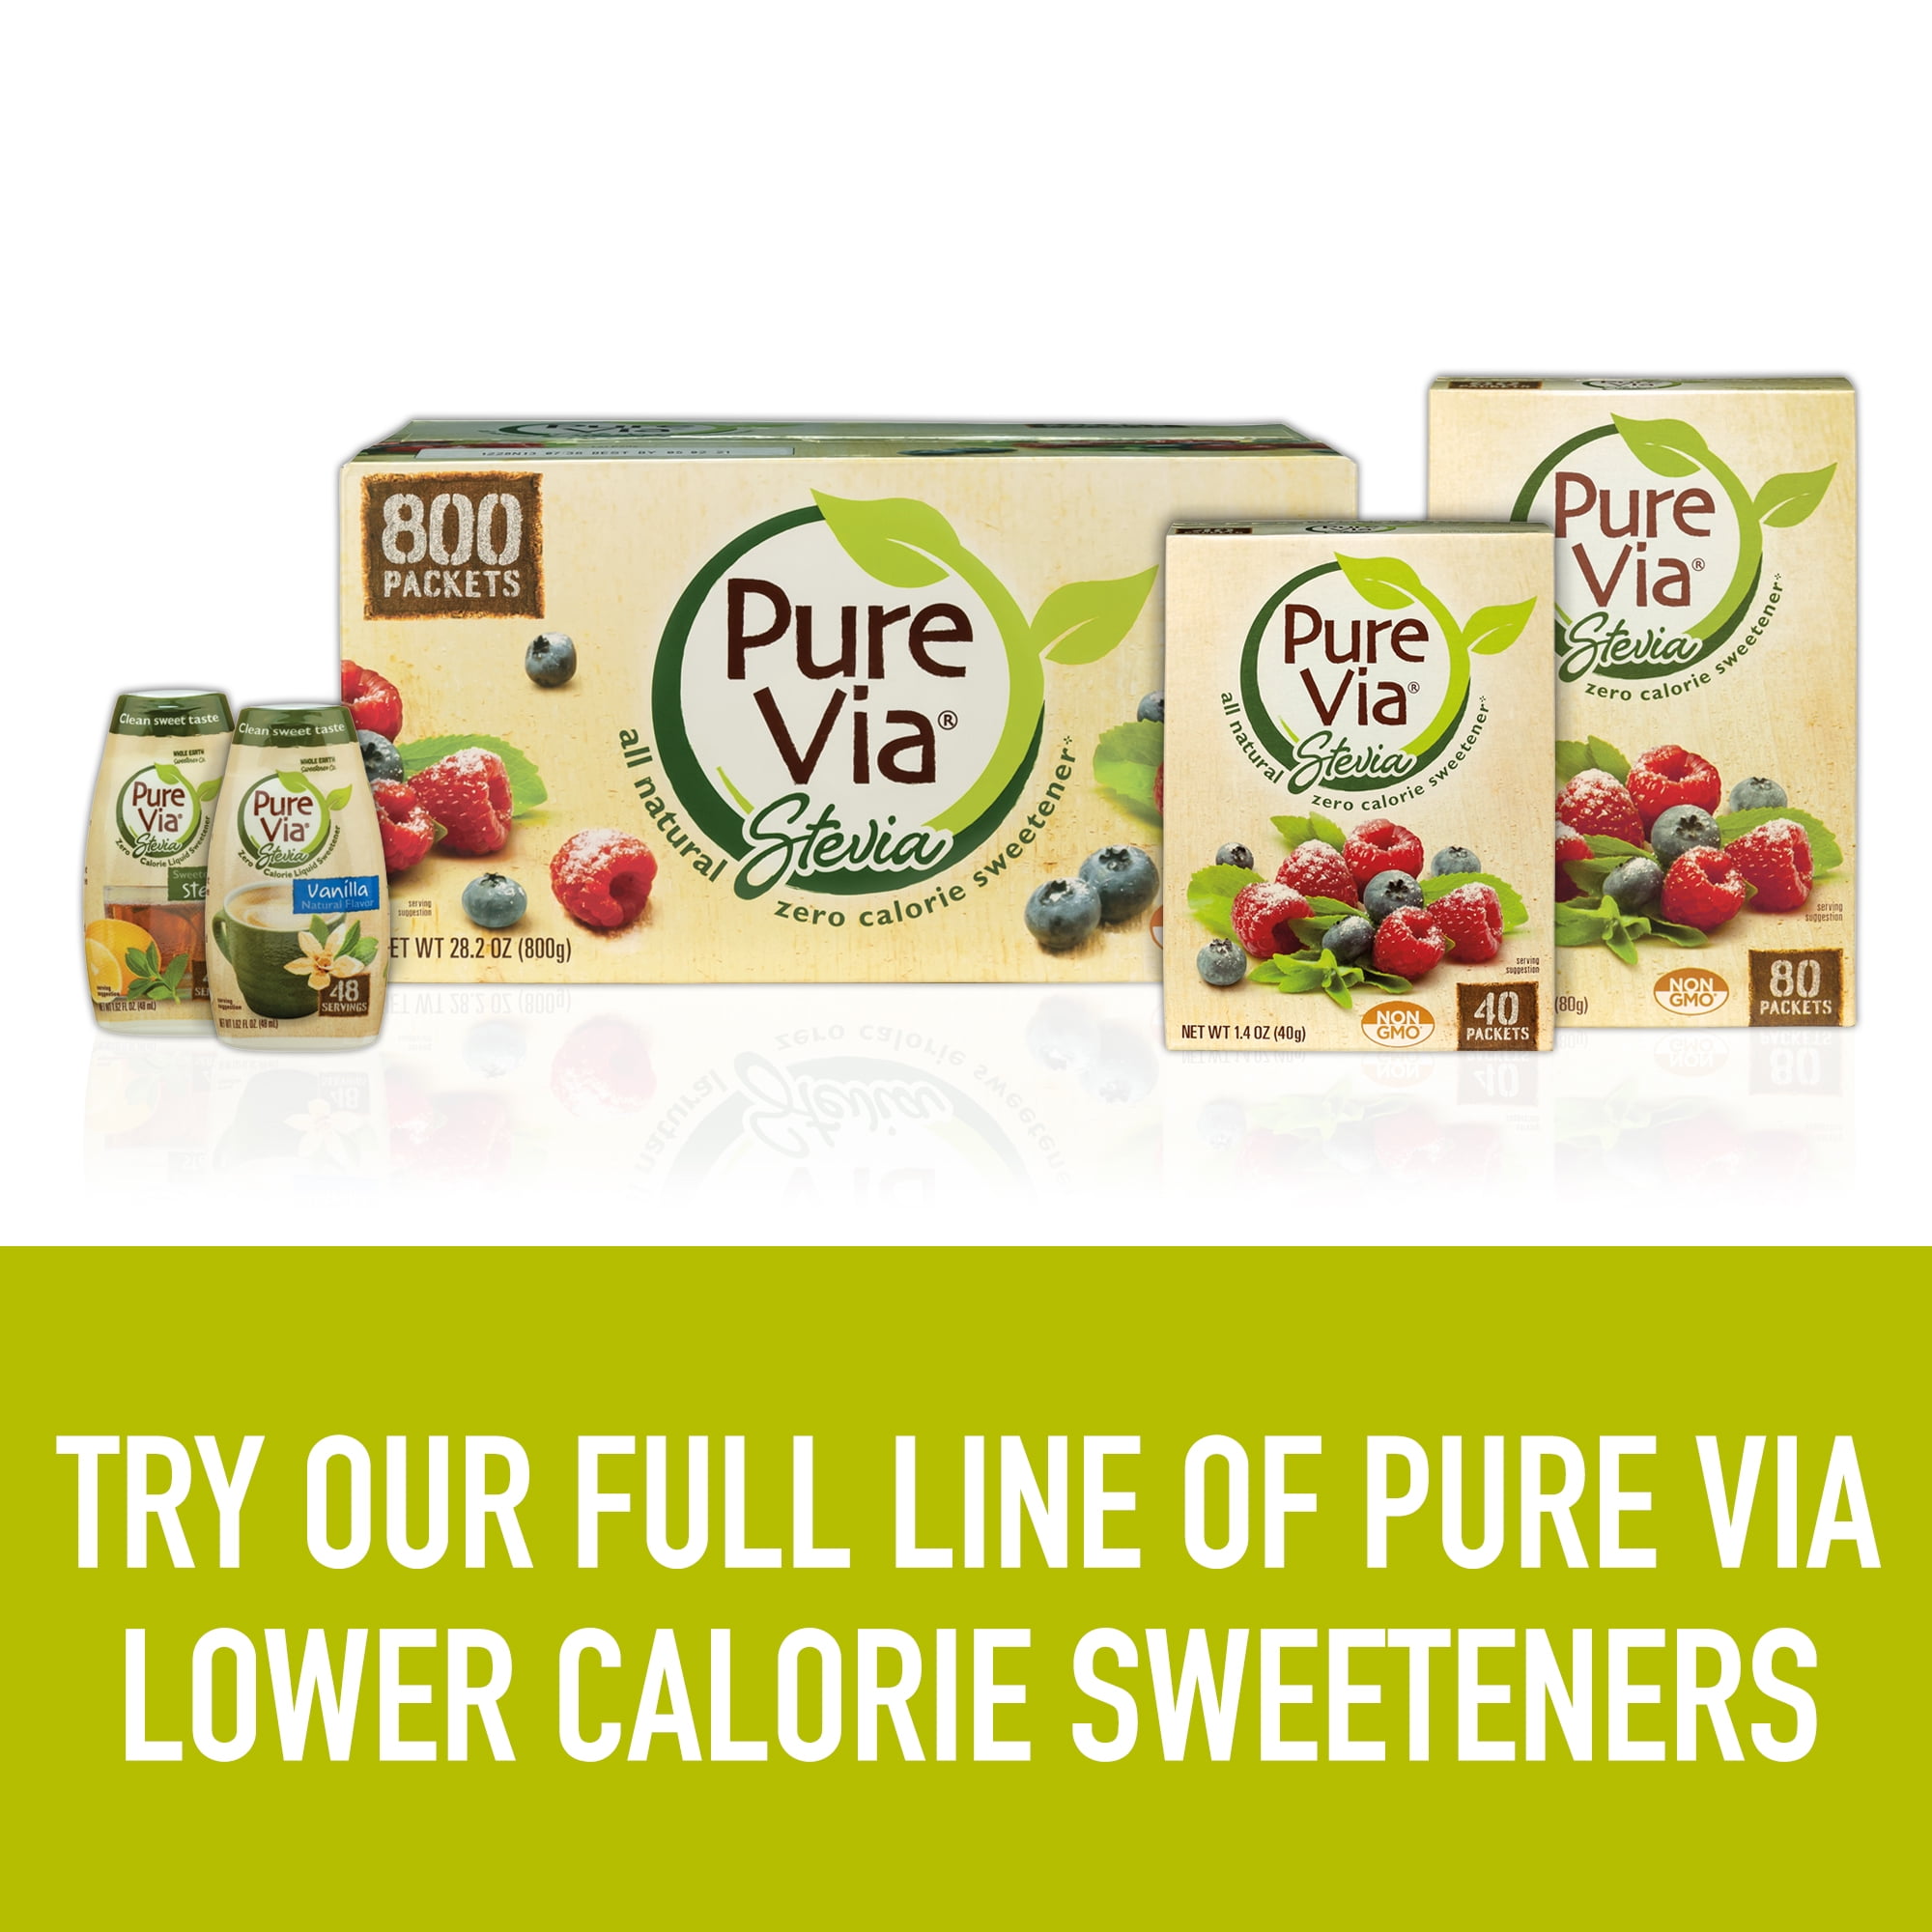 Pure Via Stevia Zero Calorie Liquid Sweetener 1.62 oz BTL